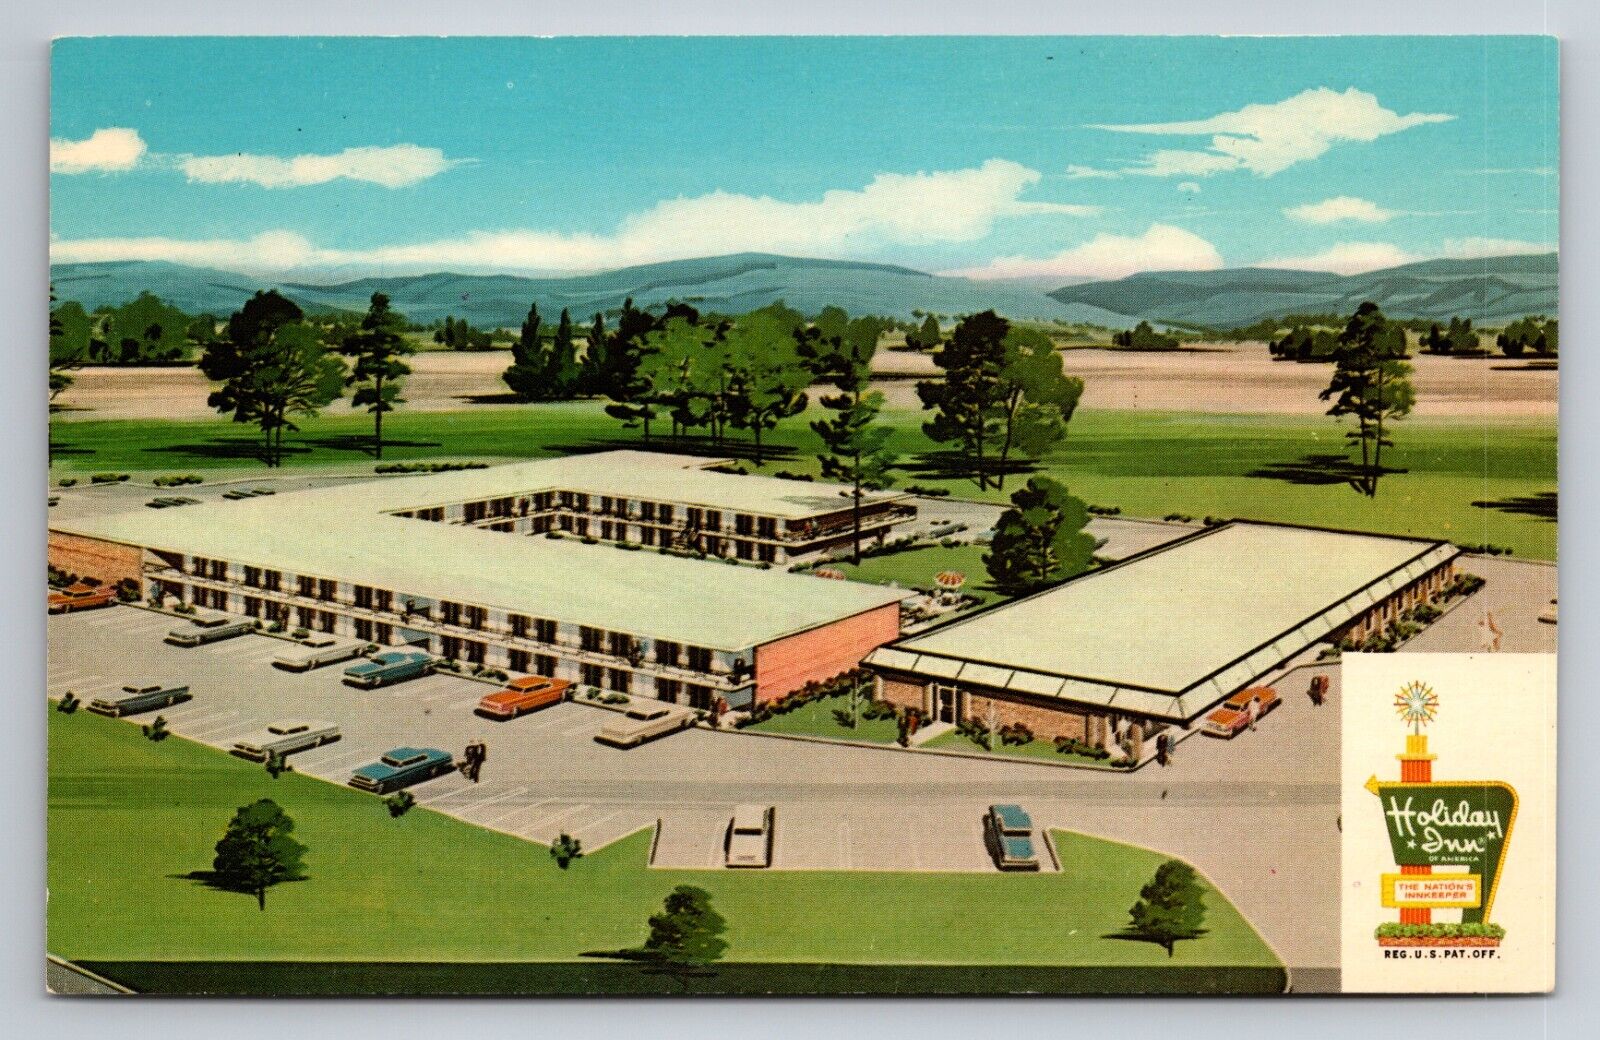 Holiday Inn North Tucson Arizona Vintage Unposted Postcard